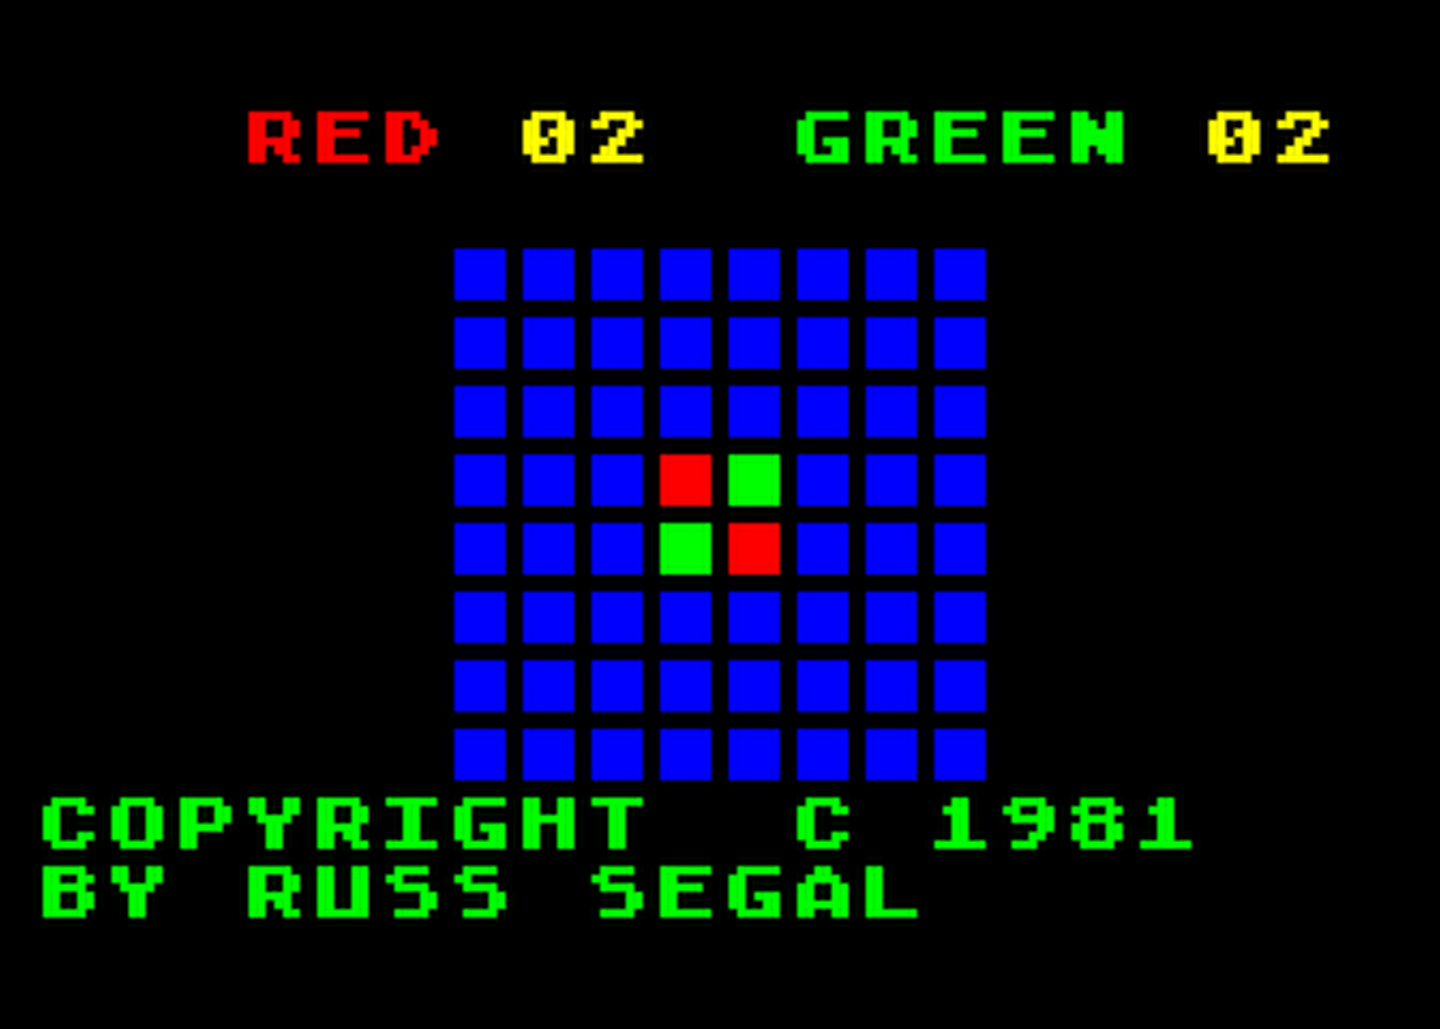 Atari GameBase Reversi_II APX 1981